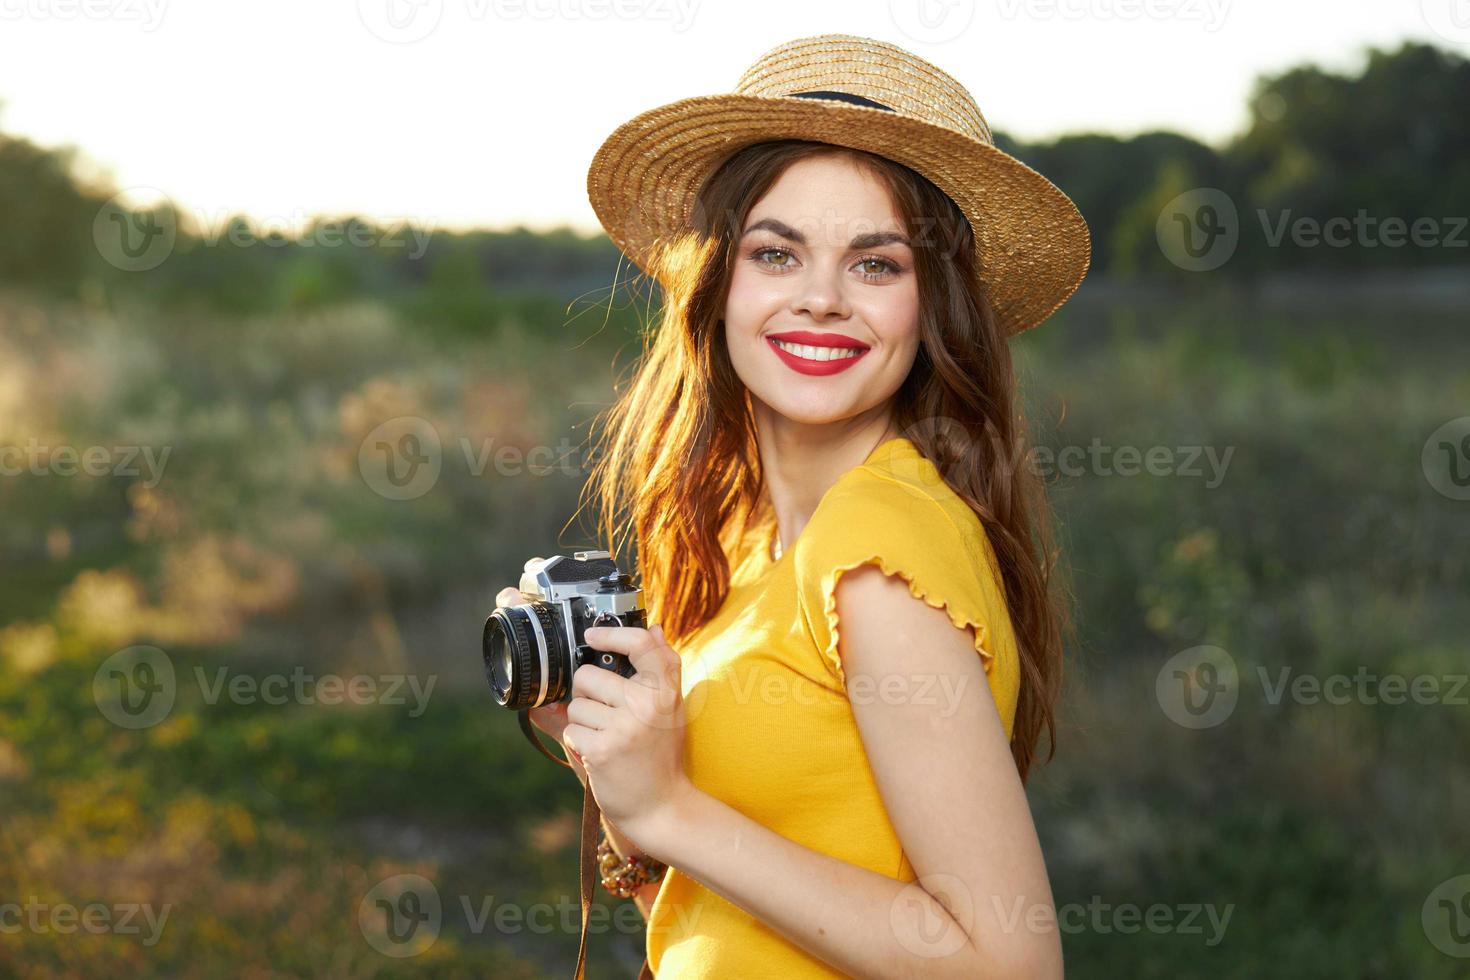 kvinna fotograf med en kamera i henne händer leende röd mun gul t-shirt hatt promenad foto